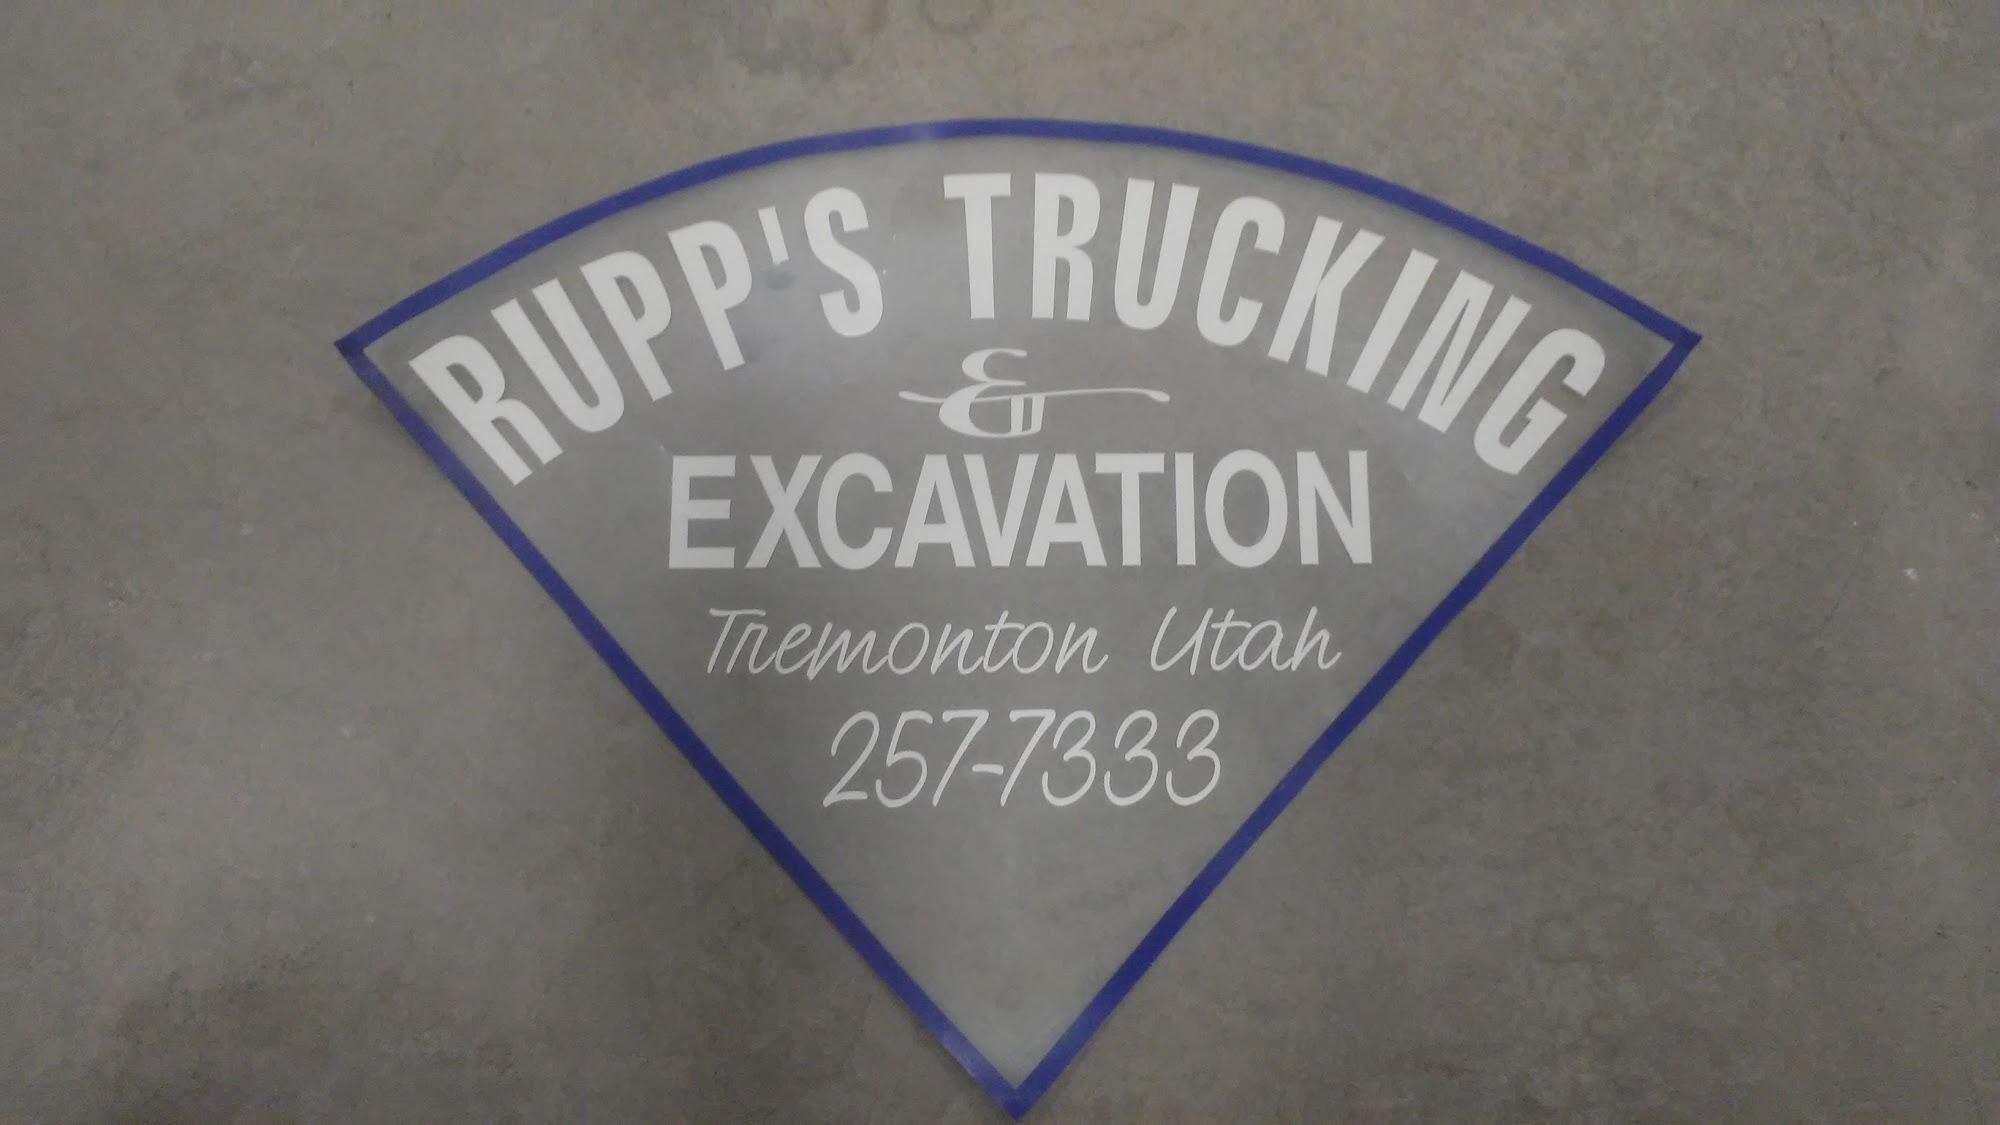 Rupp's Trucking & Excavating 7905 W 9600 N, Tremonton Utah 84337